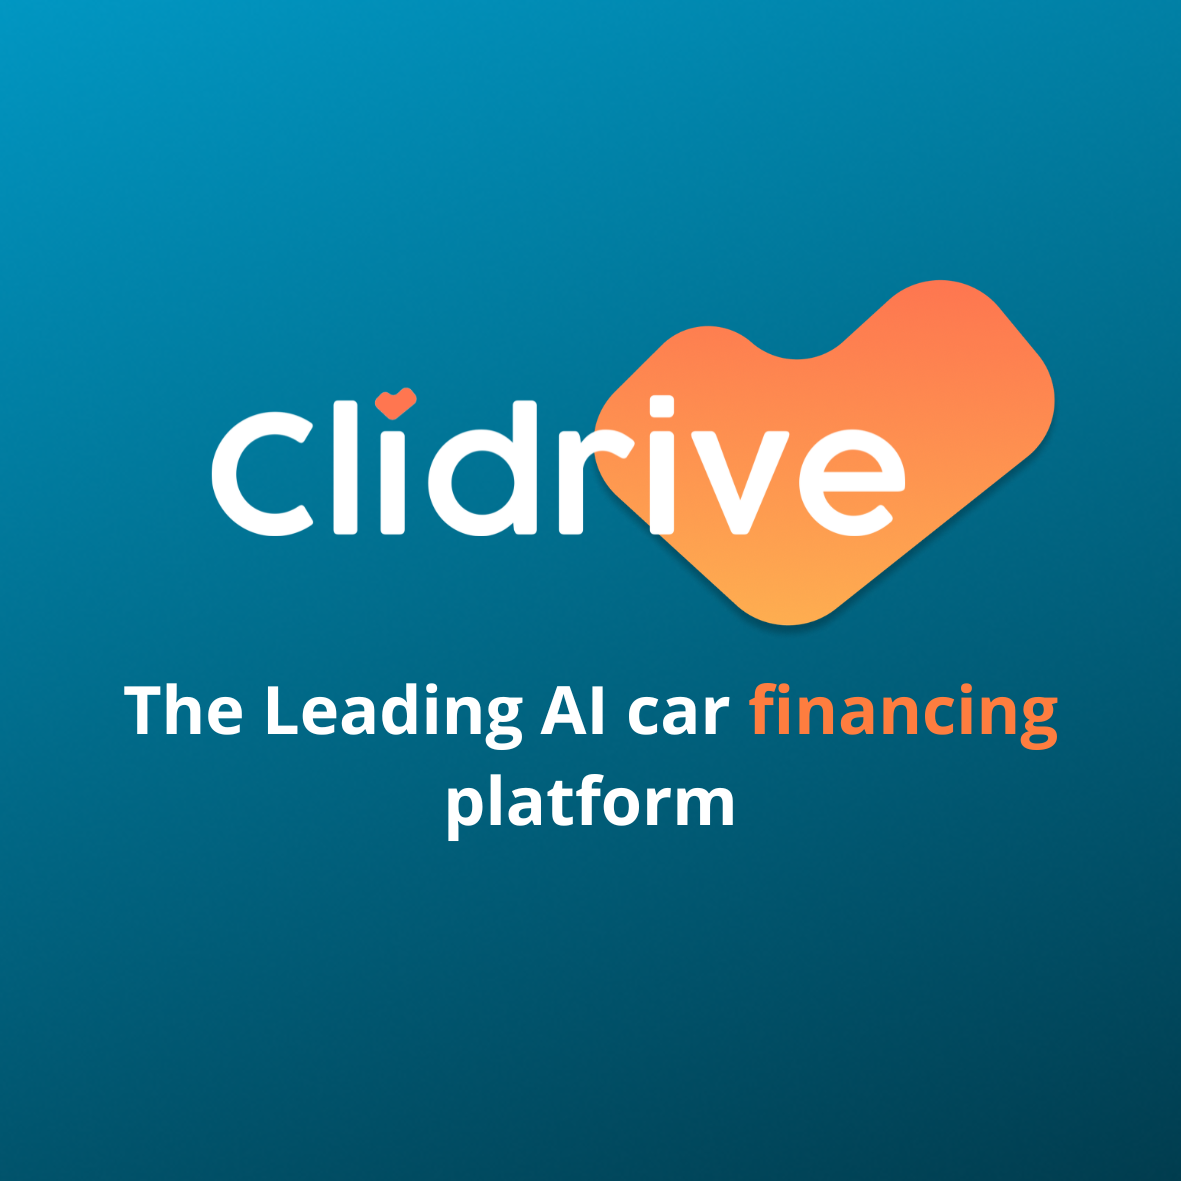 ¿Qué es Clidrive? Somos una plataforma líder de préstamos con inteligencia artificial diseñada para mejorar el acceso a crédito asequible y al mismo tiempo reducir el riesgo y los costos de los préstamos para nuestros socios bancarios.